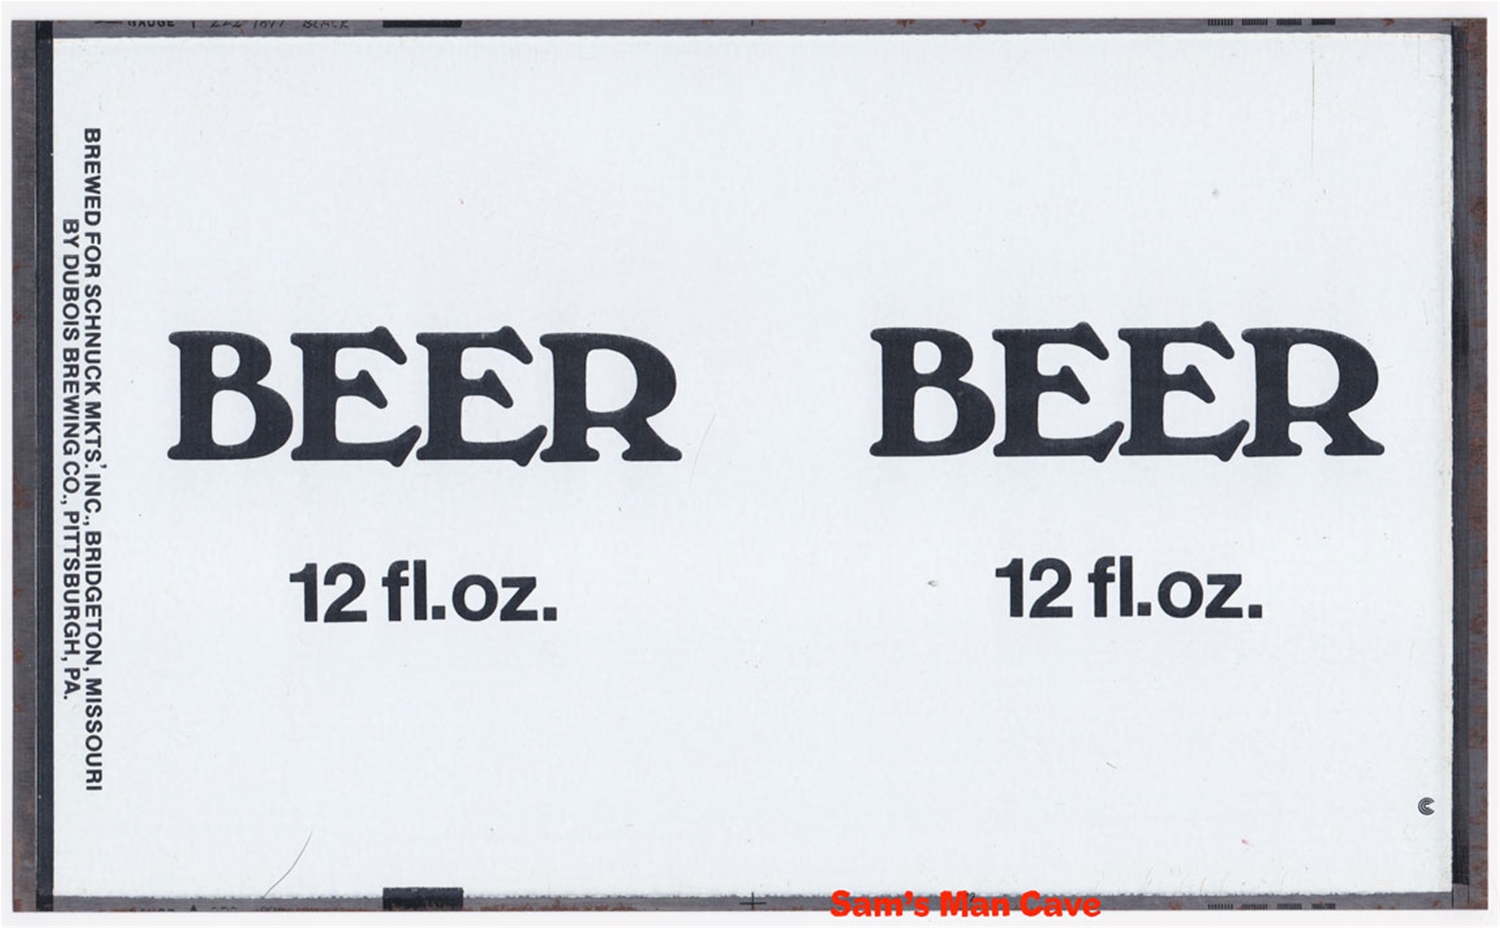 BEER Flat Unrolled Beer Can